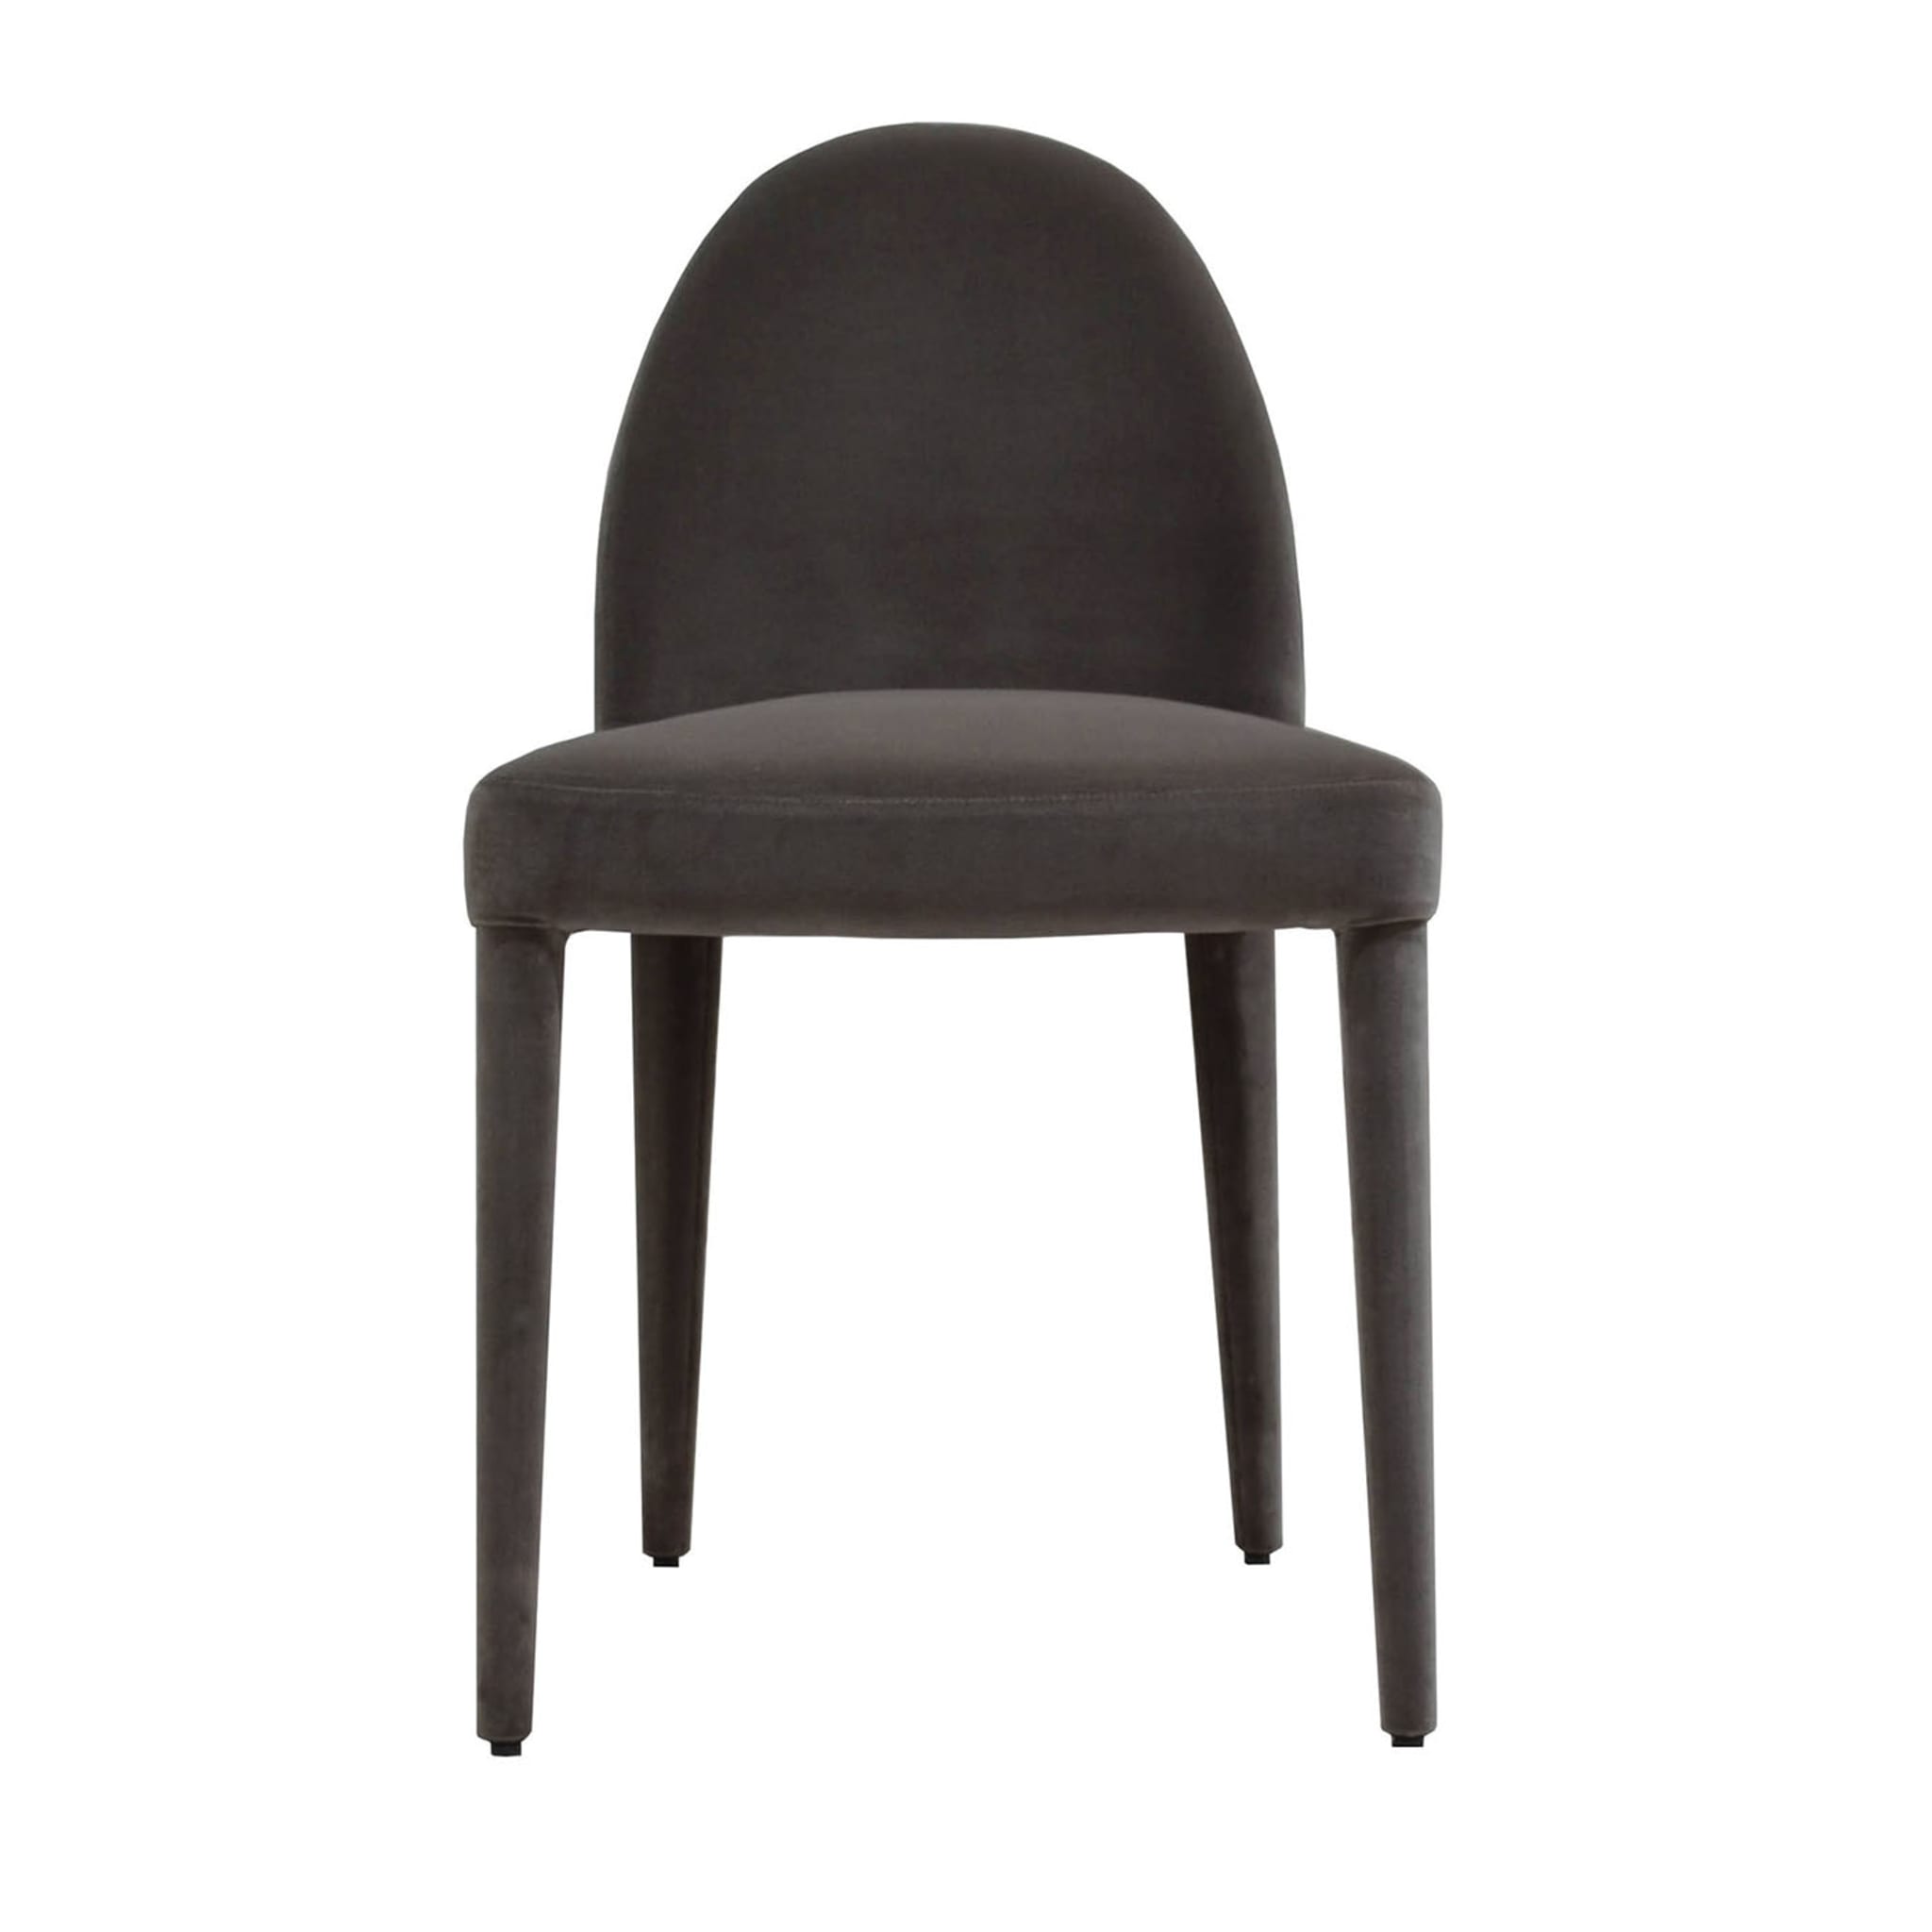 ‘Balzaretti’ Dining Chair in Mocha Velvet - Main view